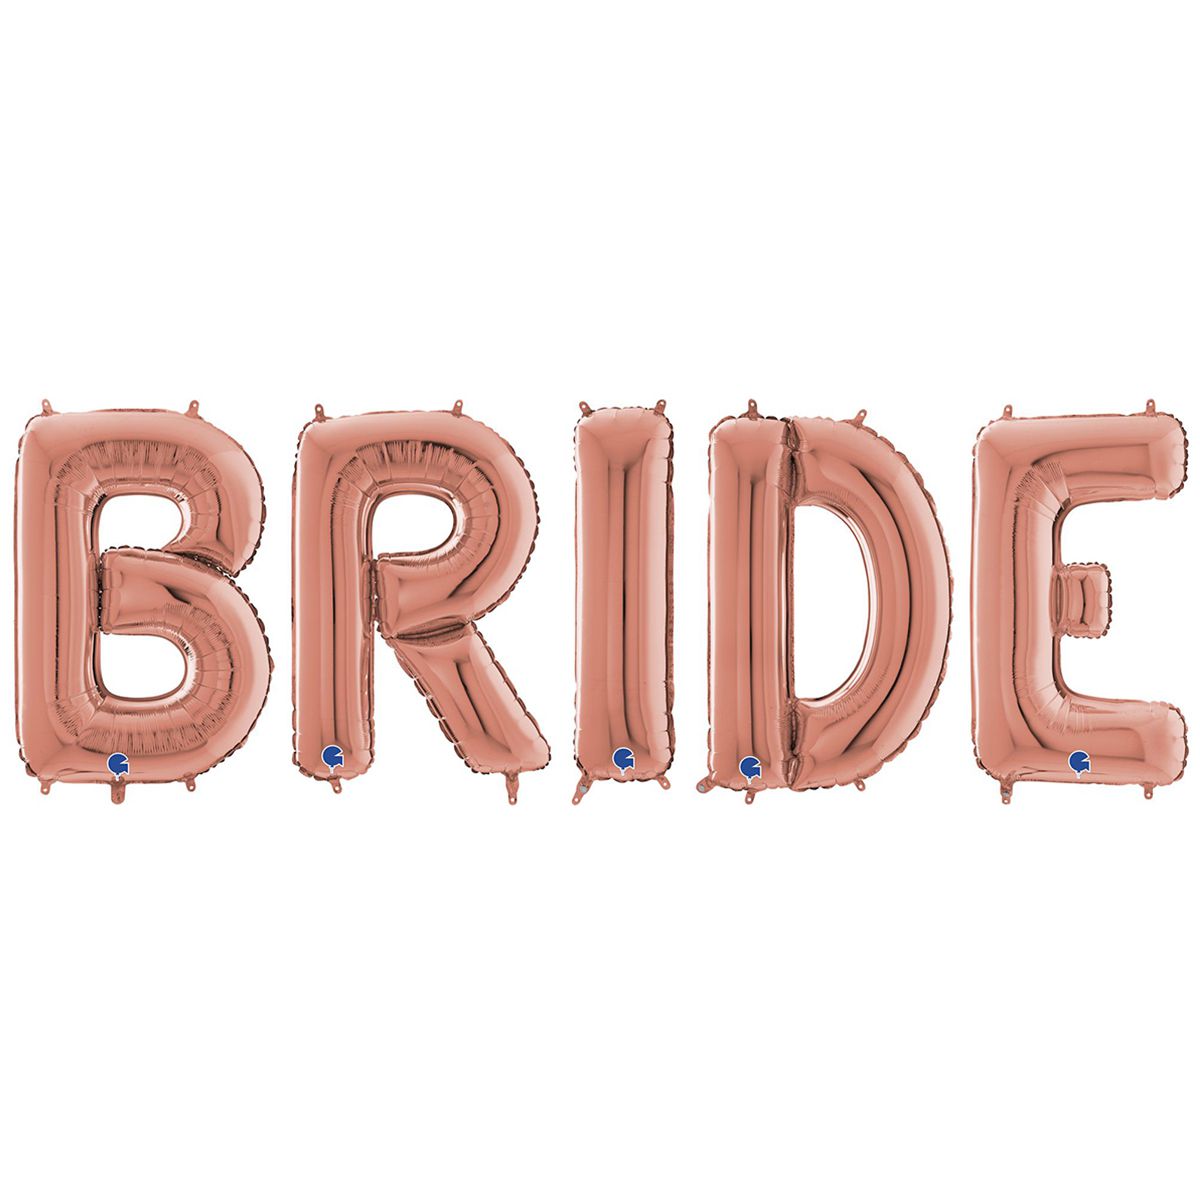 Фольгированные шары-буквы 26" уп  bride невеста розовое золото.Надуты гелием